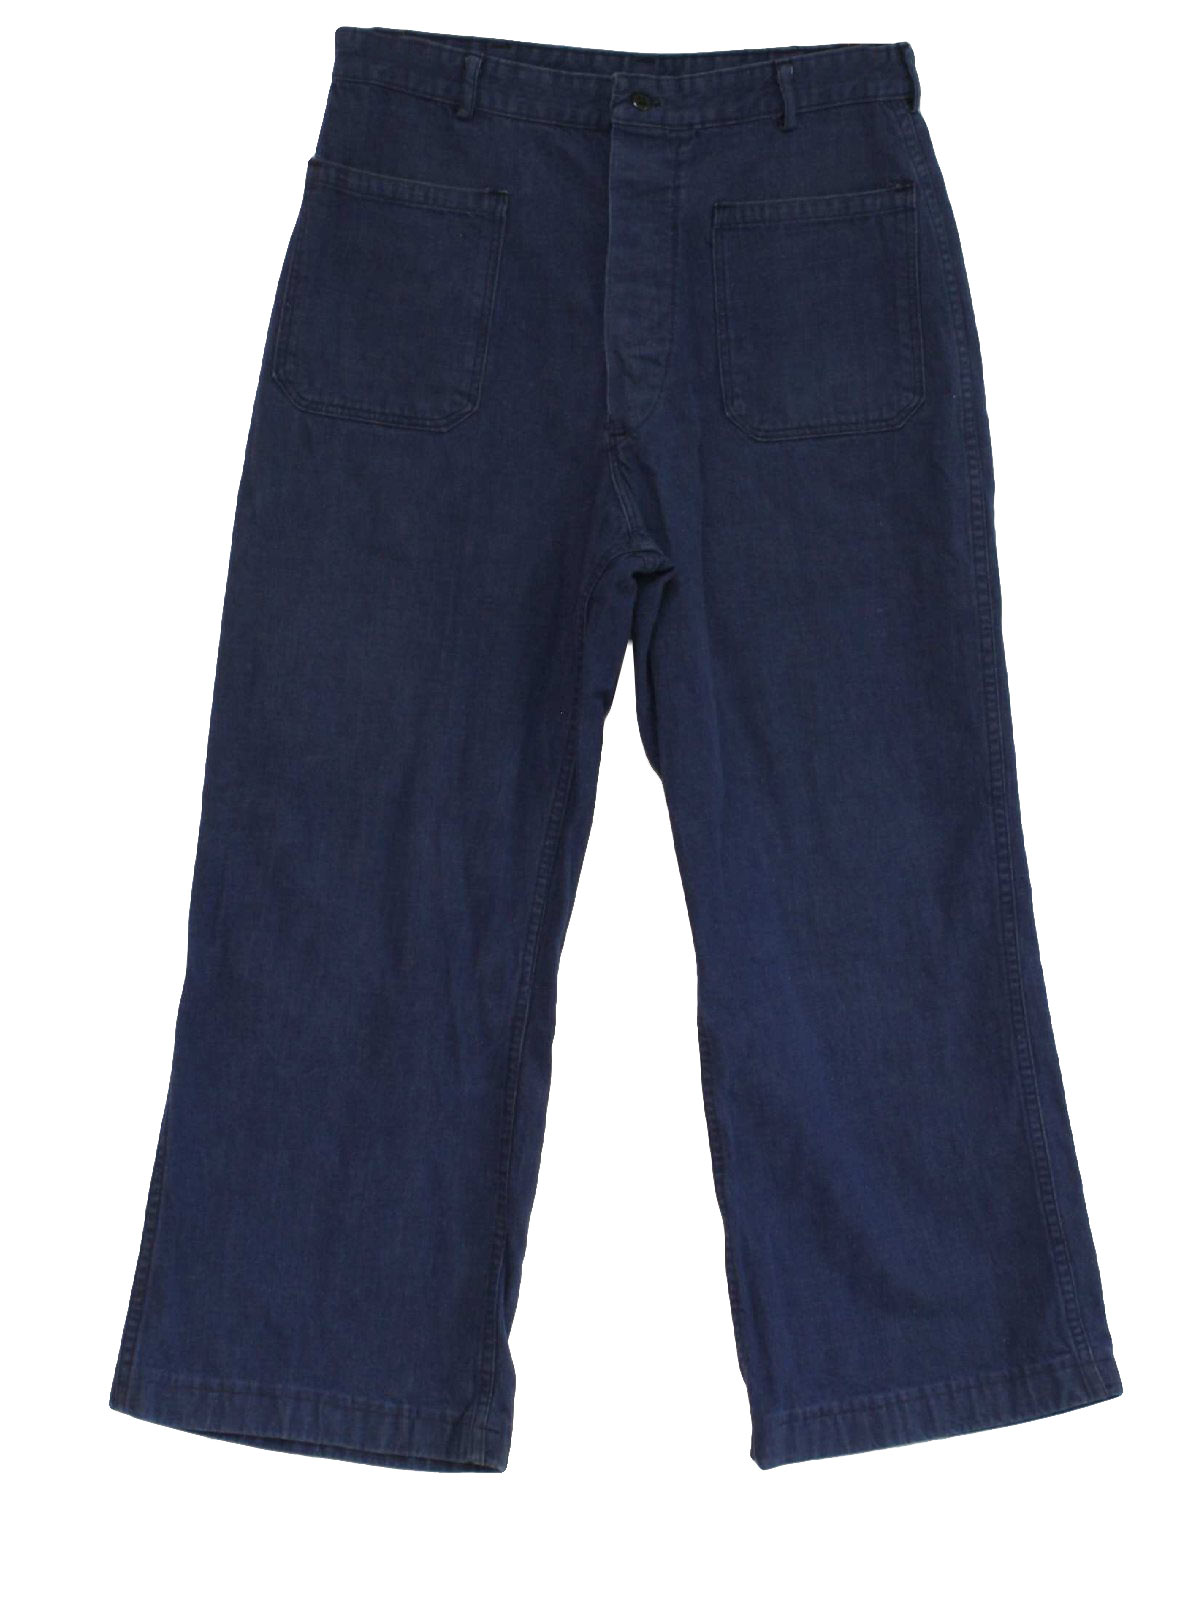 Vintage 70's Pants: 70s -no label- Mens blue cotton blend denim Navy ...